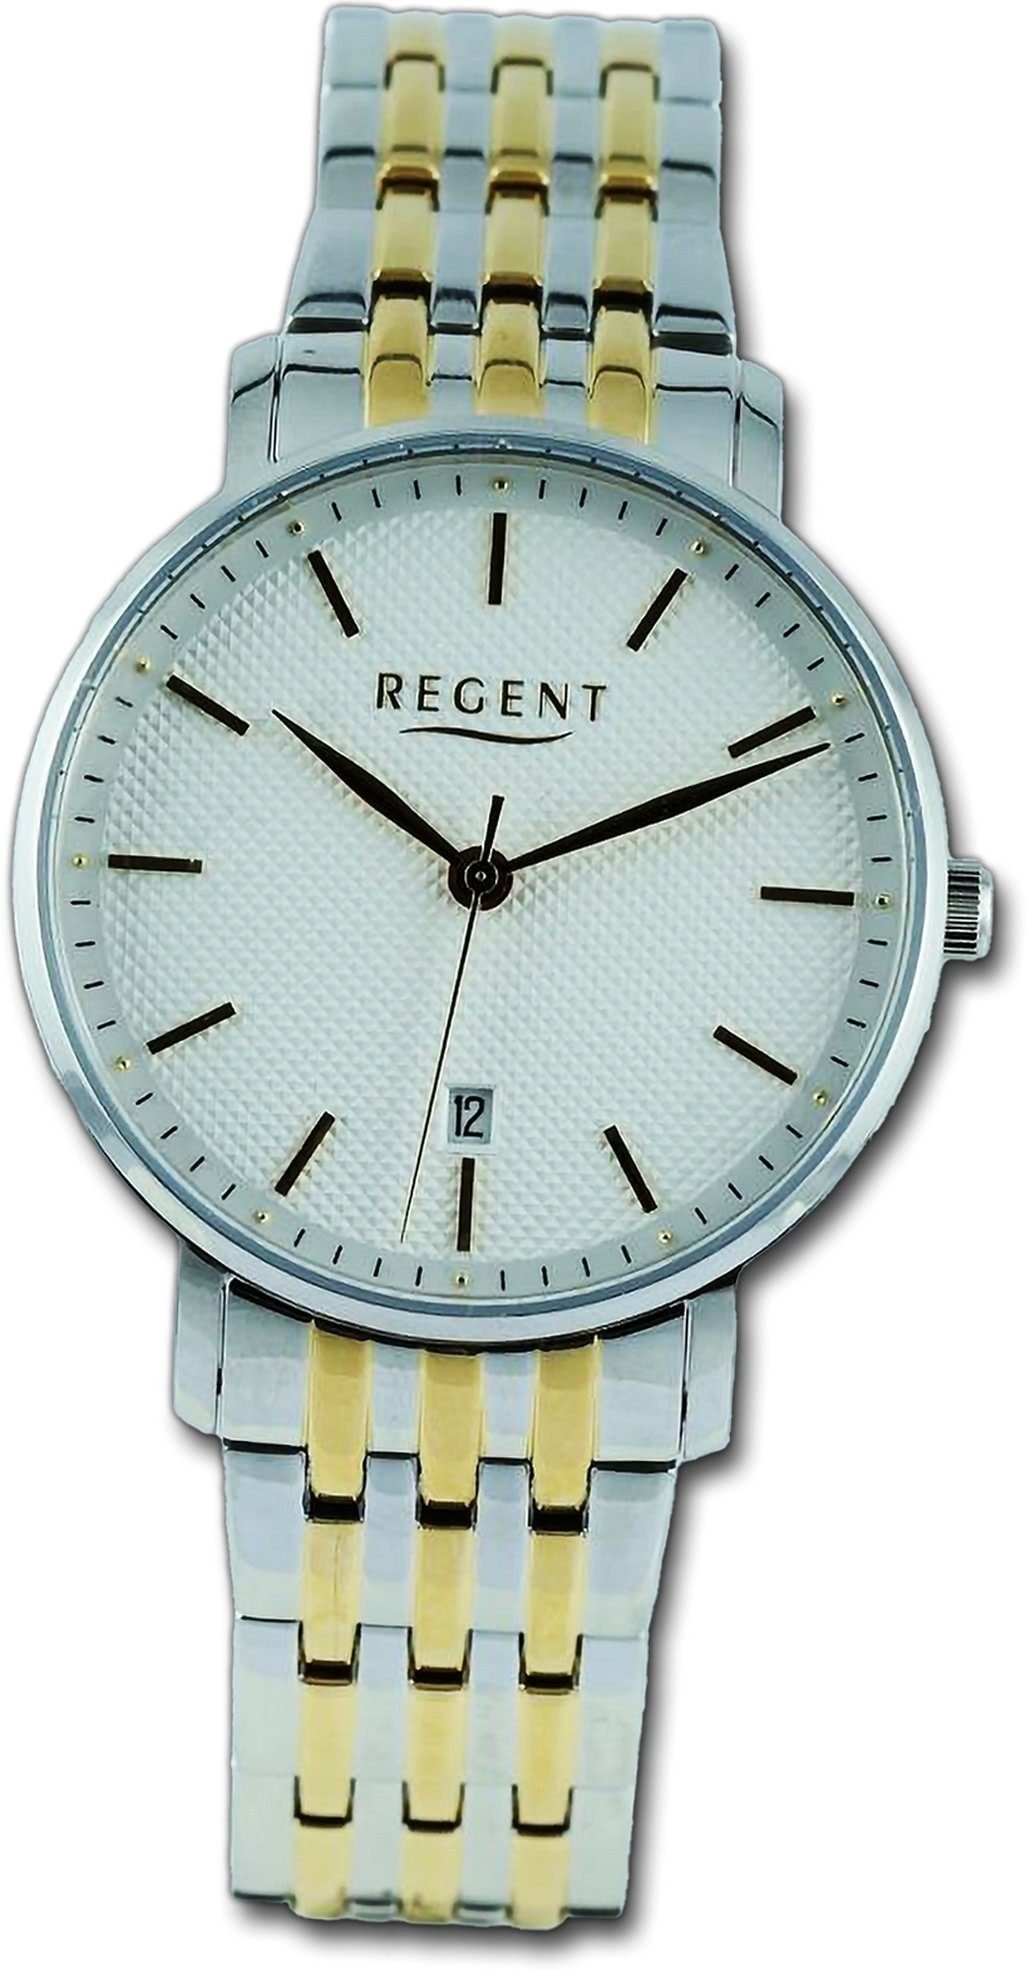 Regent Quarzuhr Regent Herren Armbanduhr Analog, Herrenuhr Metallarmband silber, gold, rundes Gehäuse, groß (ca. 39mm)